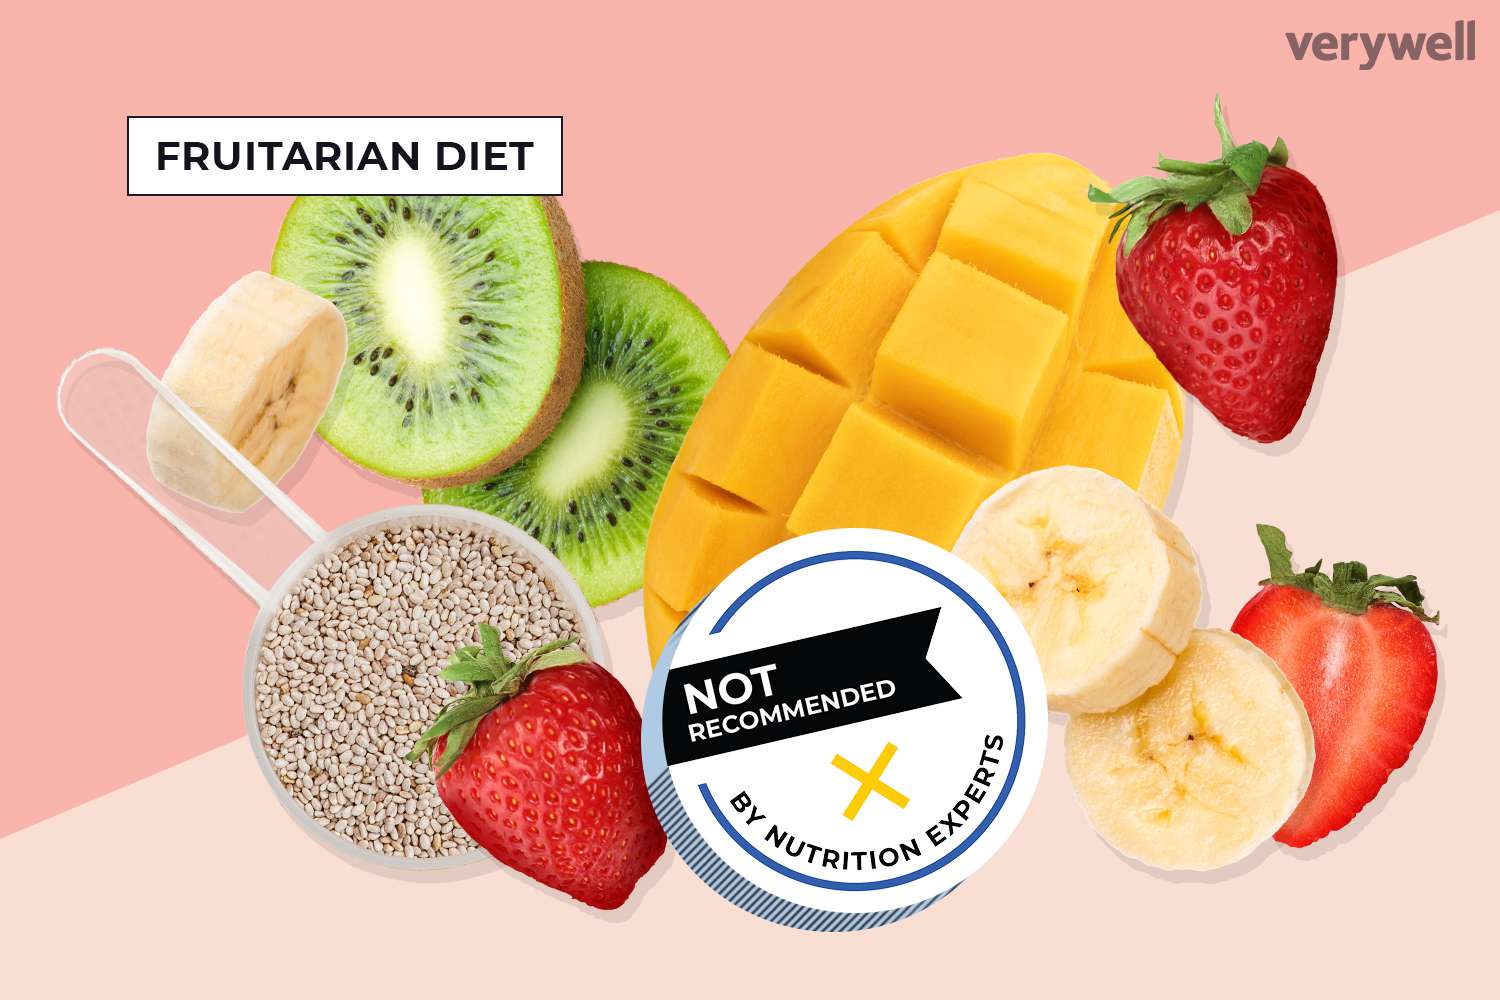 Fruitarian diet